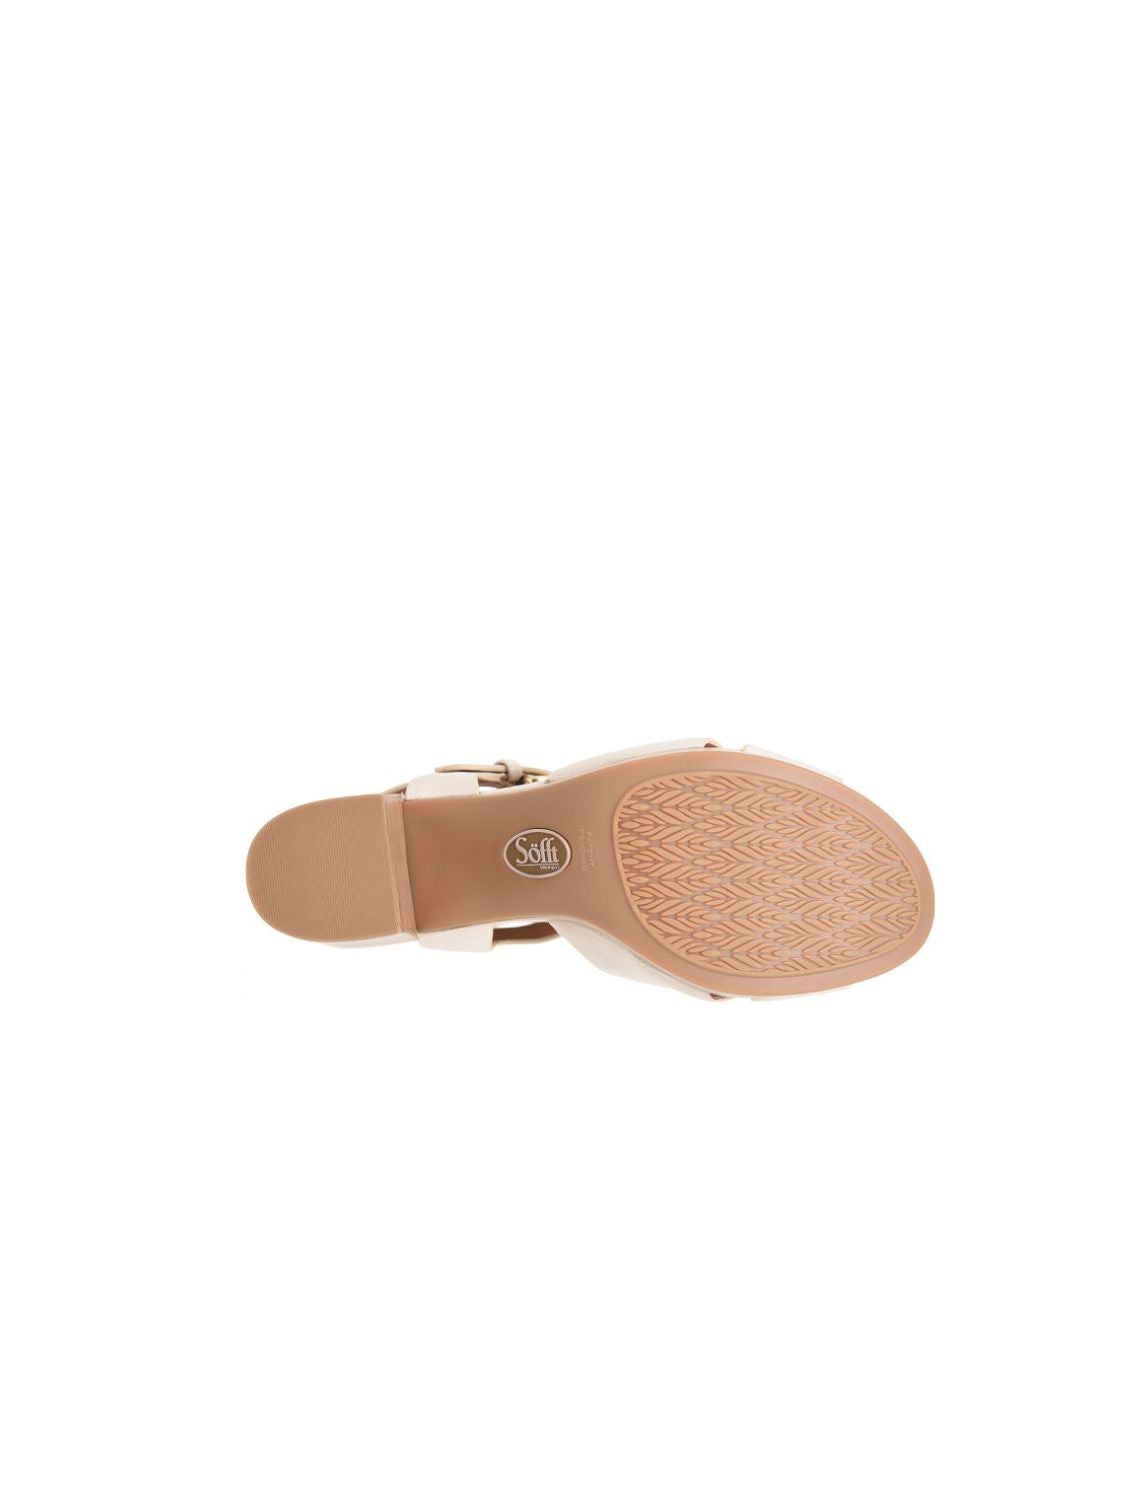 sofft lacie platform block sandal in tapicoa grey bottom